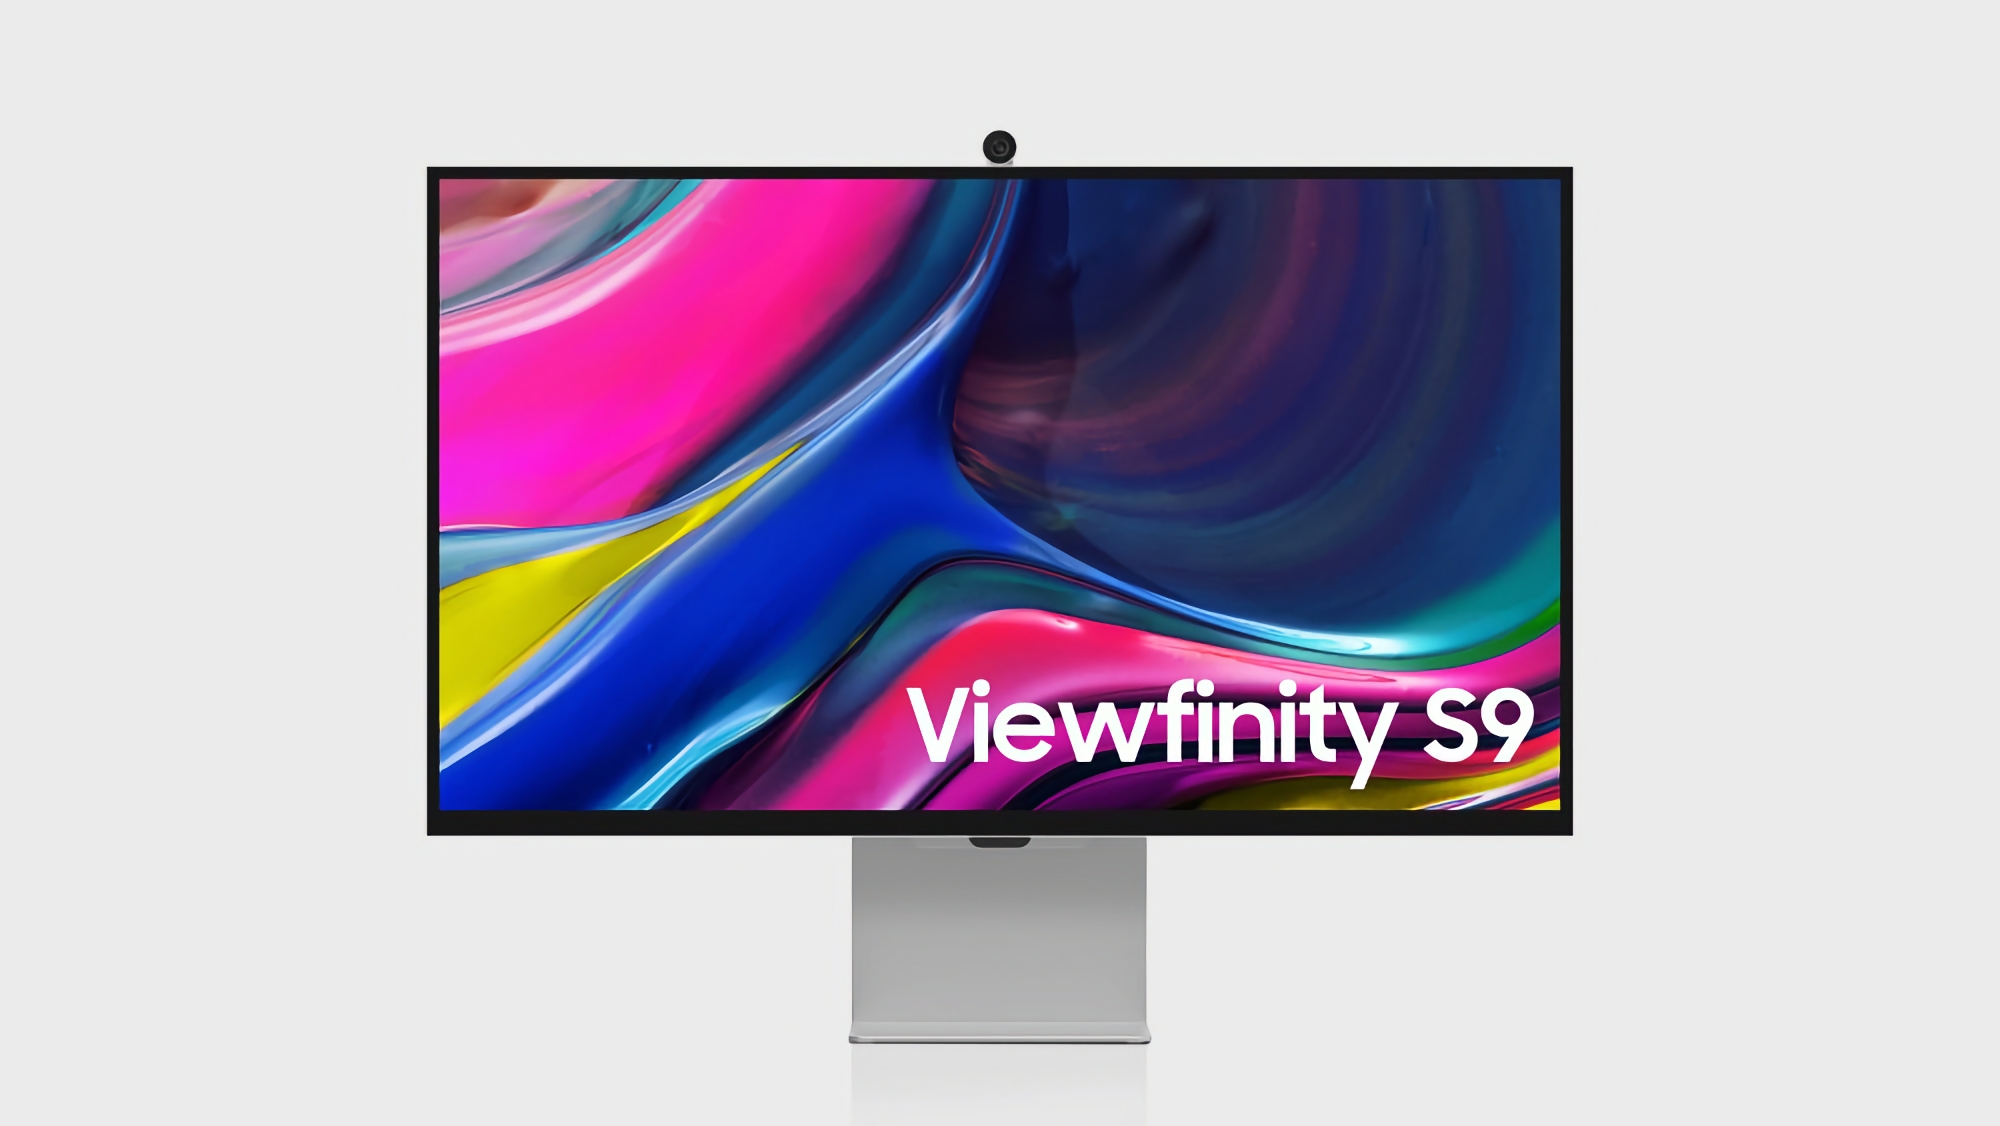 Offerta del giorno: il monitor Samsung ViewFinity S9 può essere acquistato su Amazon con uno sconto di oltre il 30%.